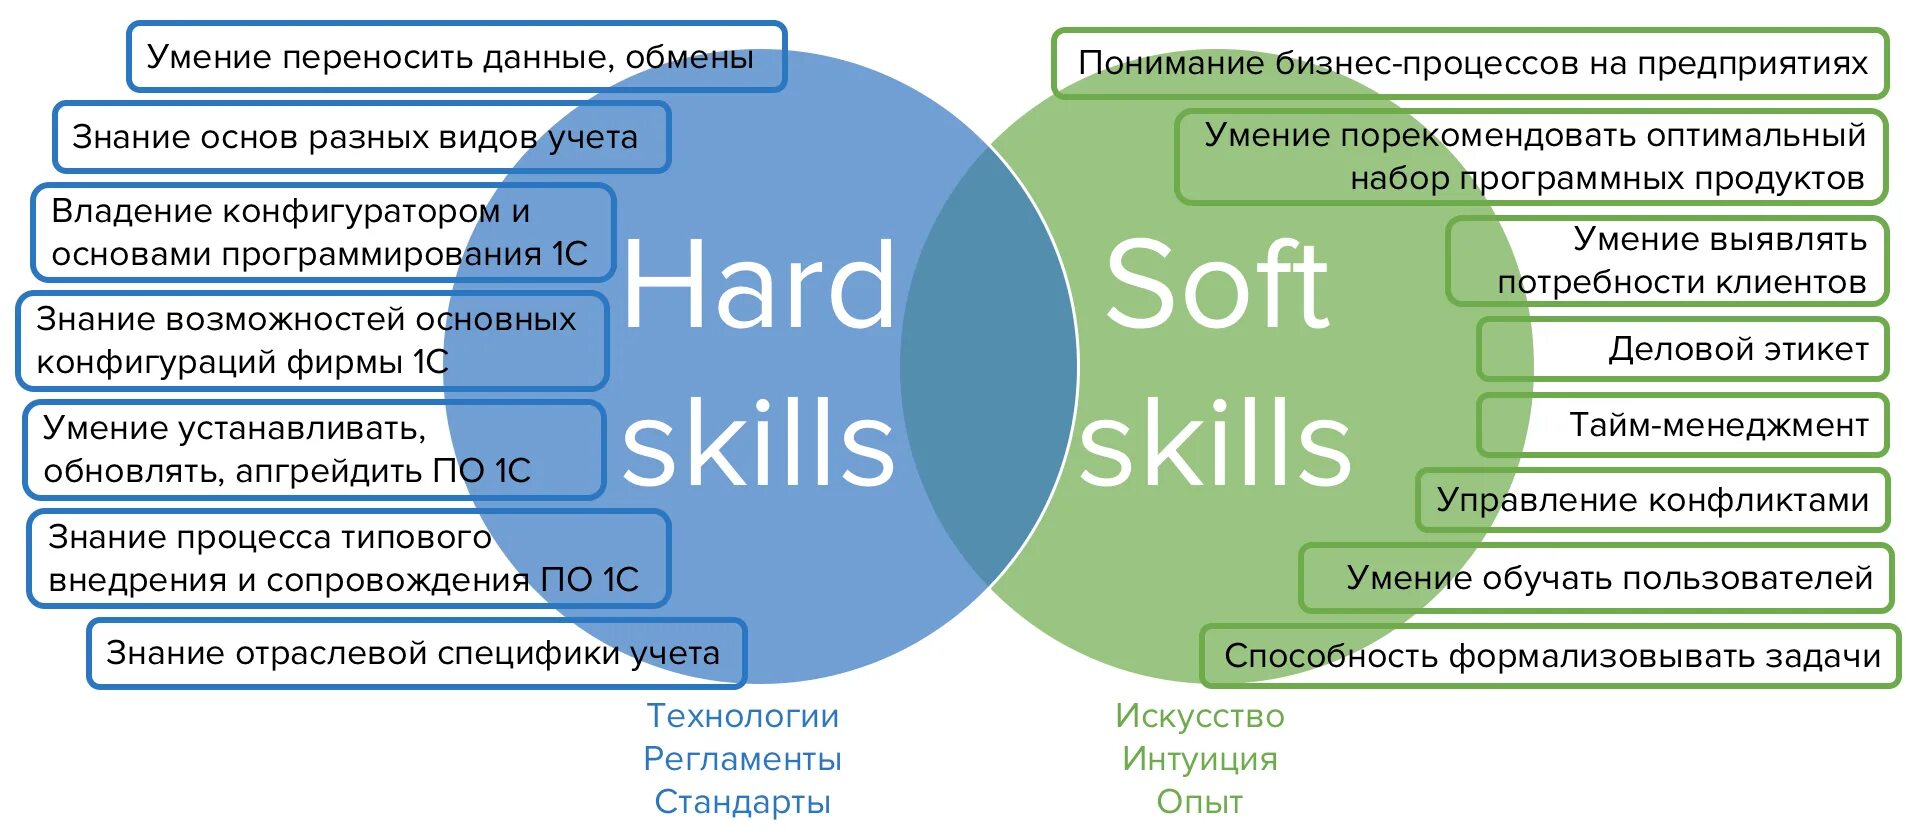 Решения мета. Hard skills и Soft skills. Навыки Хард и софт Скиллс. Компетенции педагога hard skills Soft skills. Софт и Хард компетенции.